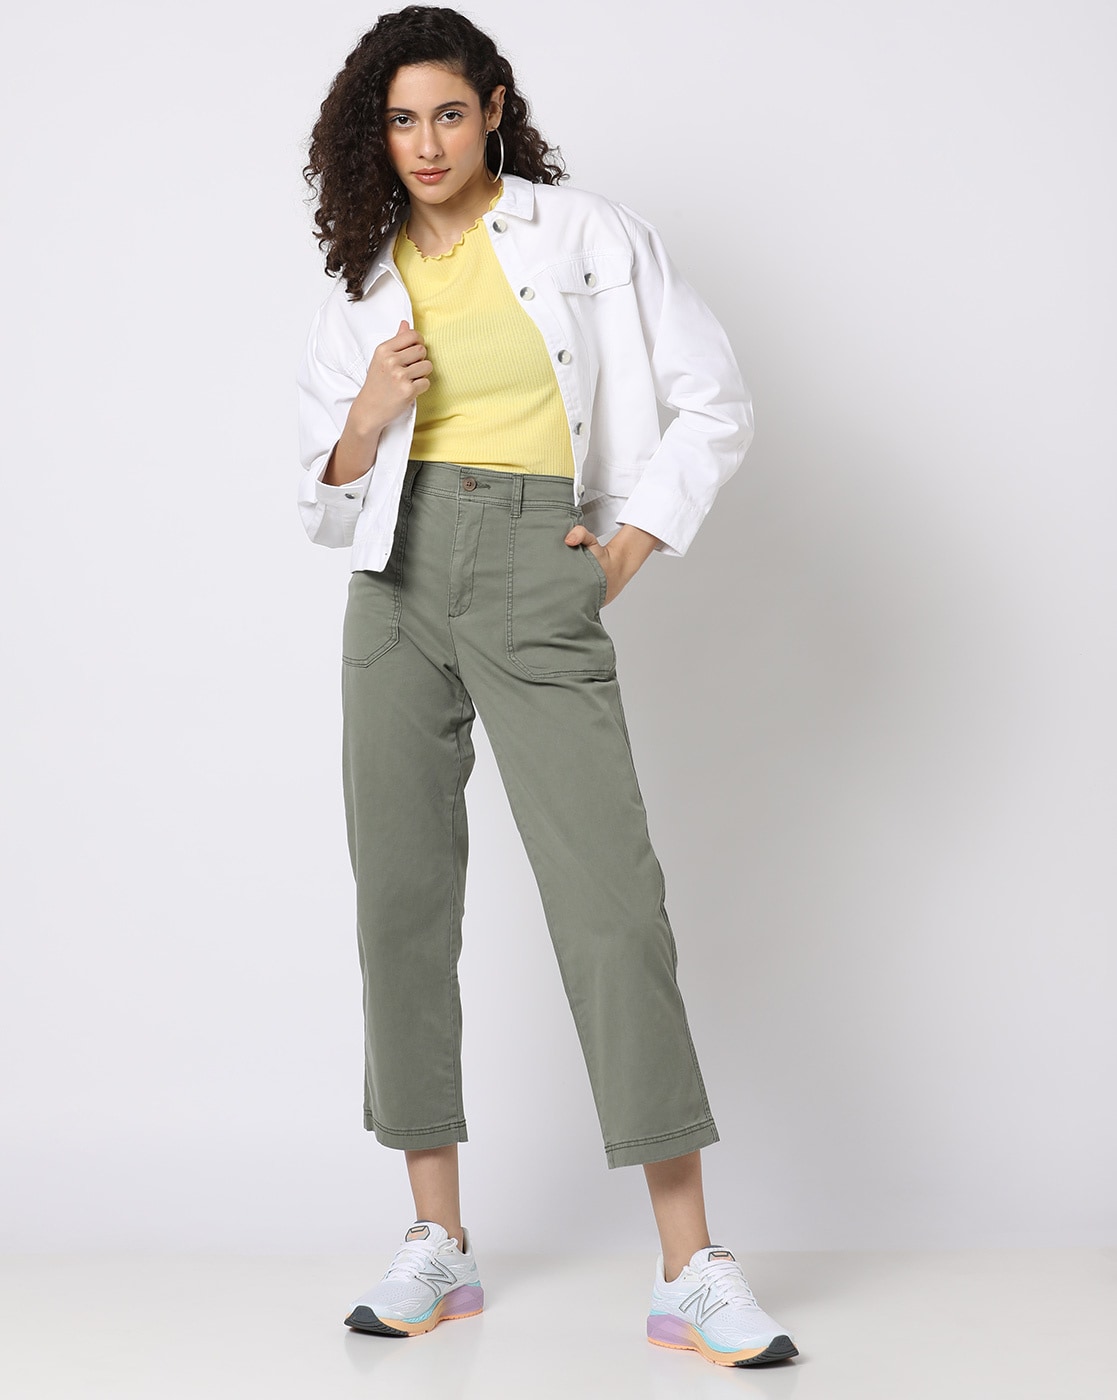 Buy Grey Trousers  Pants for Women by GAP Online  Ajiocom